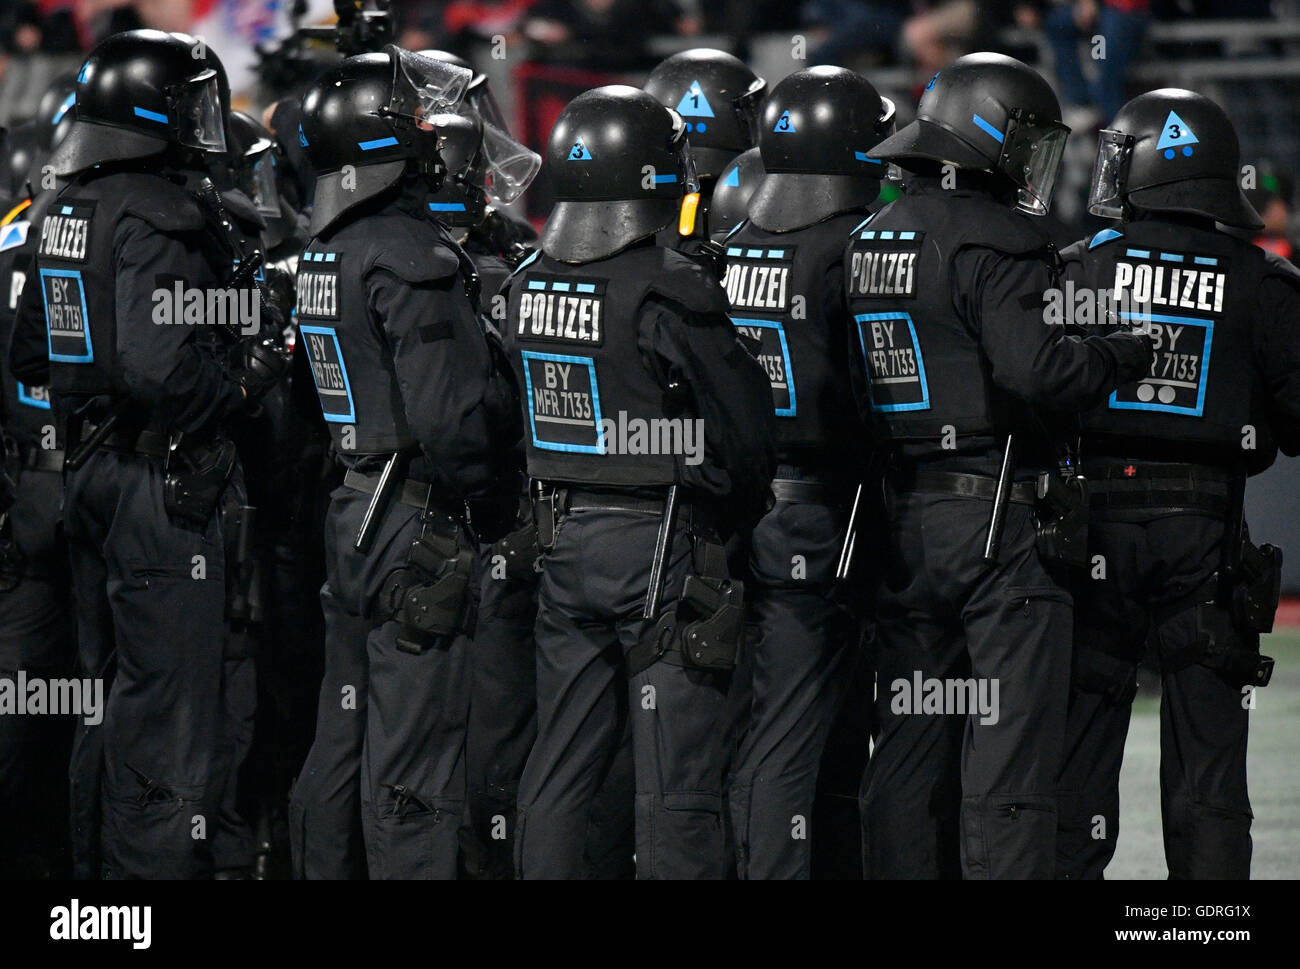 La policía antidisturbios en uniforme en frente de los fans, la relegación, Nuremberg, Baviera, Alemania Foto de stock